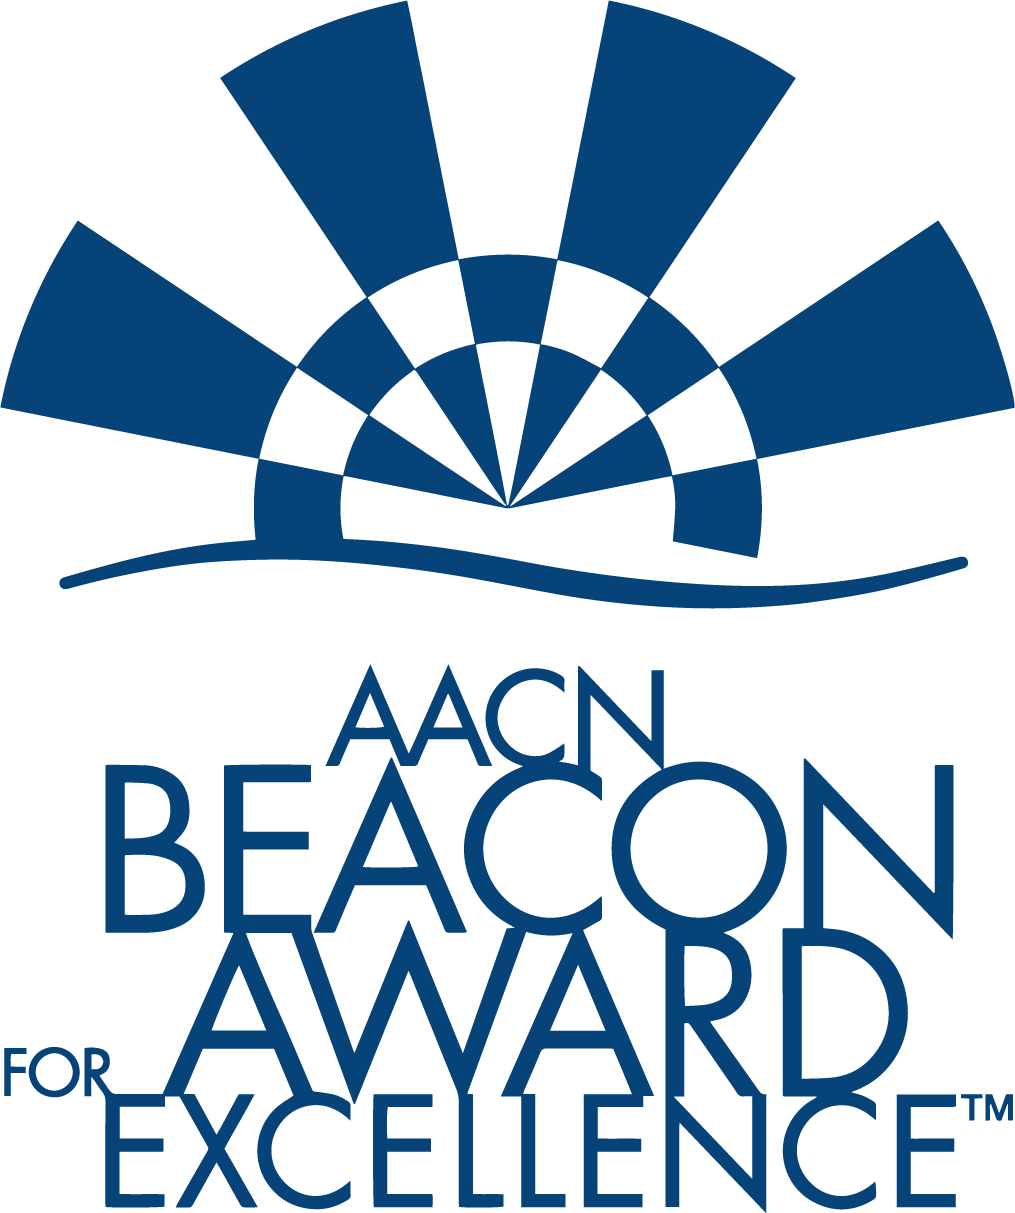 Beacon Award logo.png